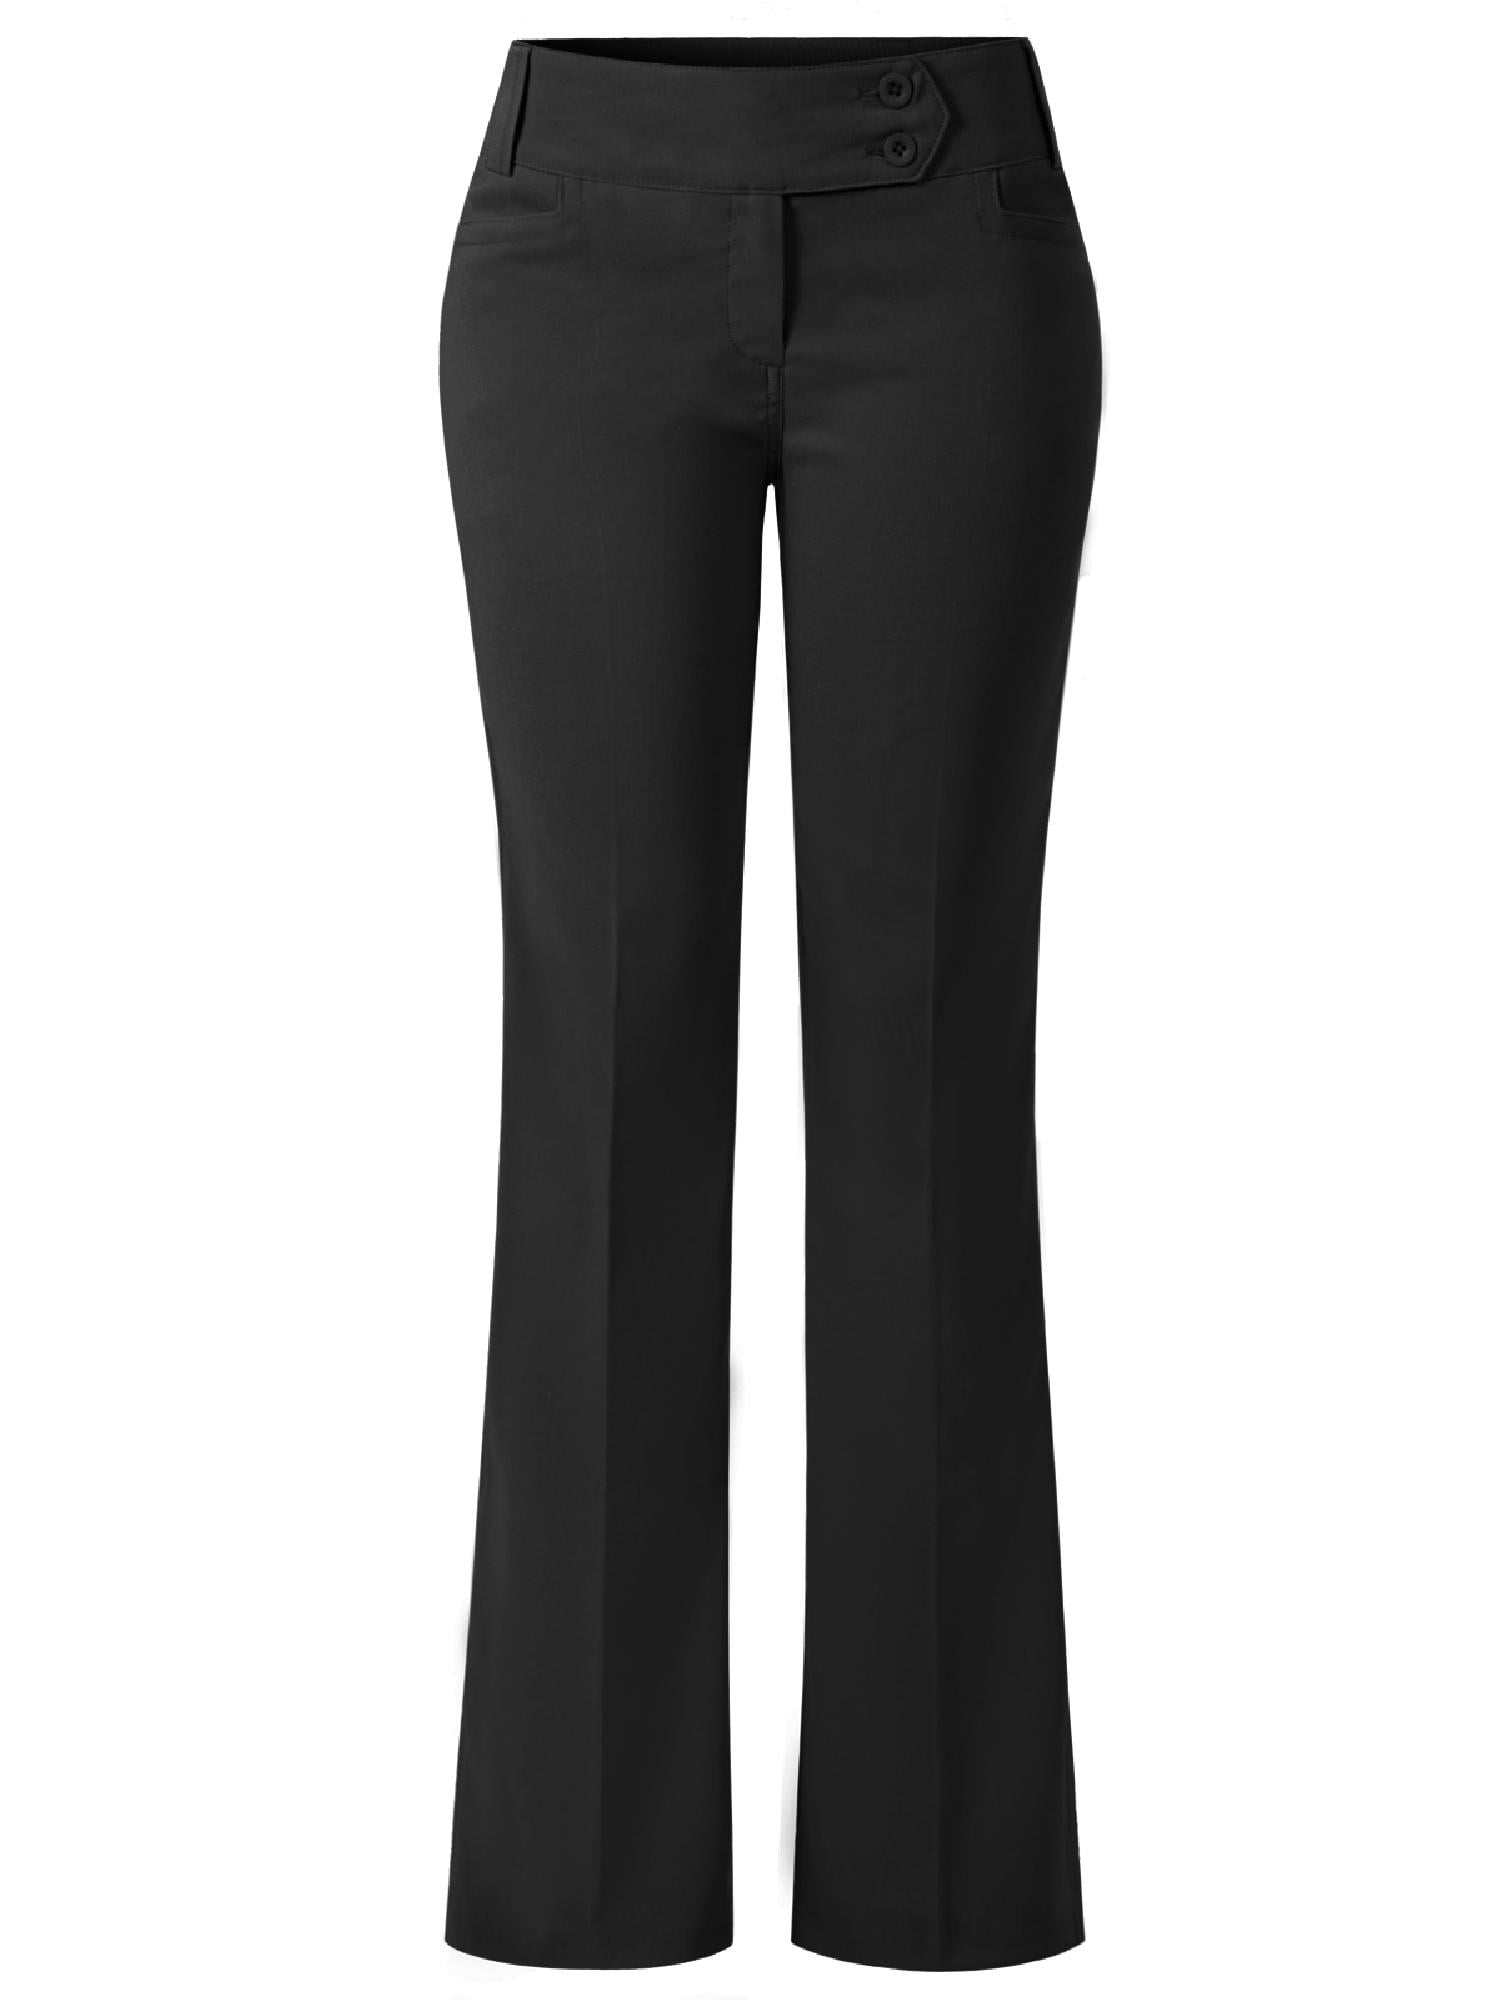 Linen Blend Suit Pants in Oat | Hallensteins NZ